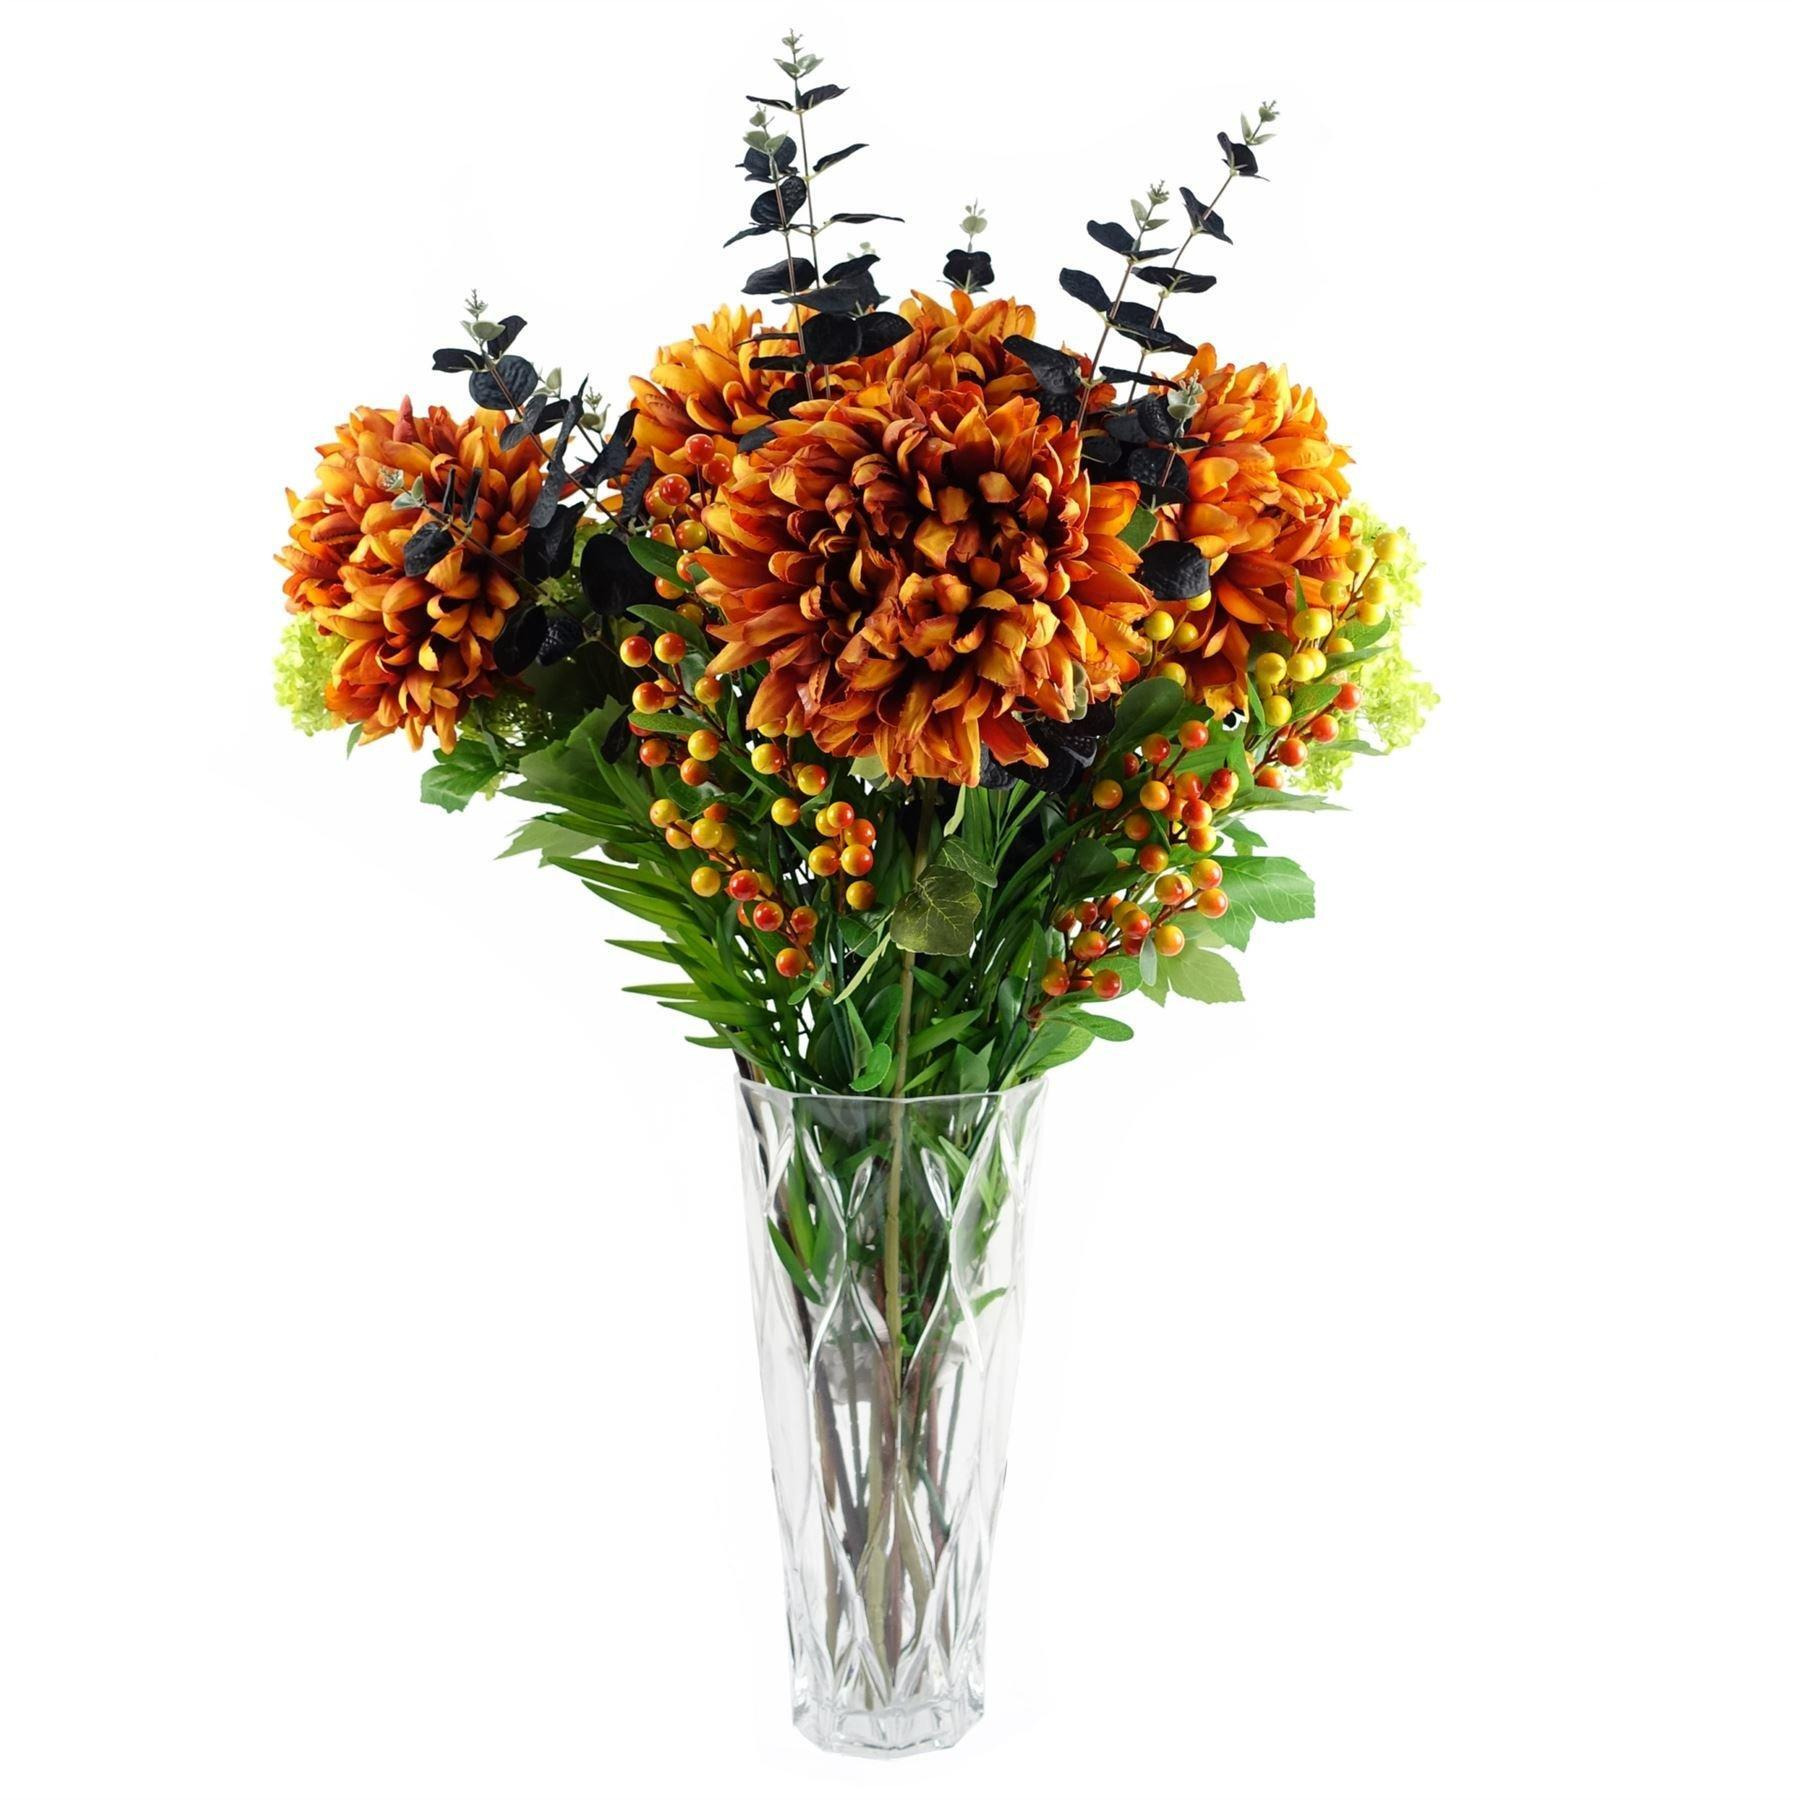 Leaf 80cm Orange Chrysanthemum Foliage and Glass Vase - image 1